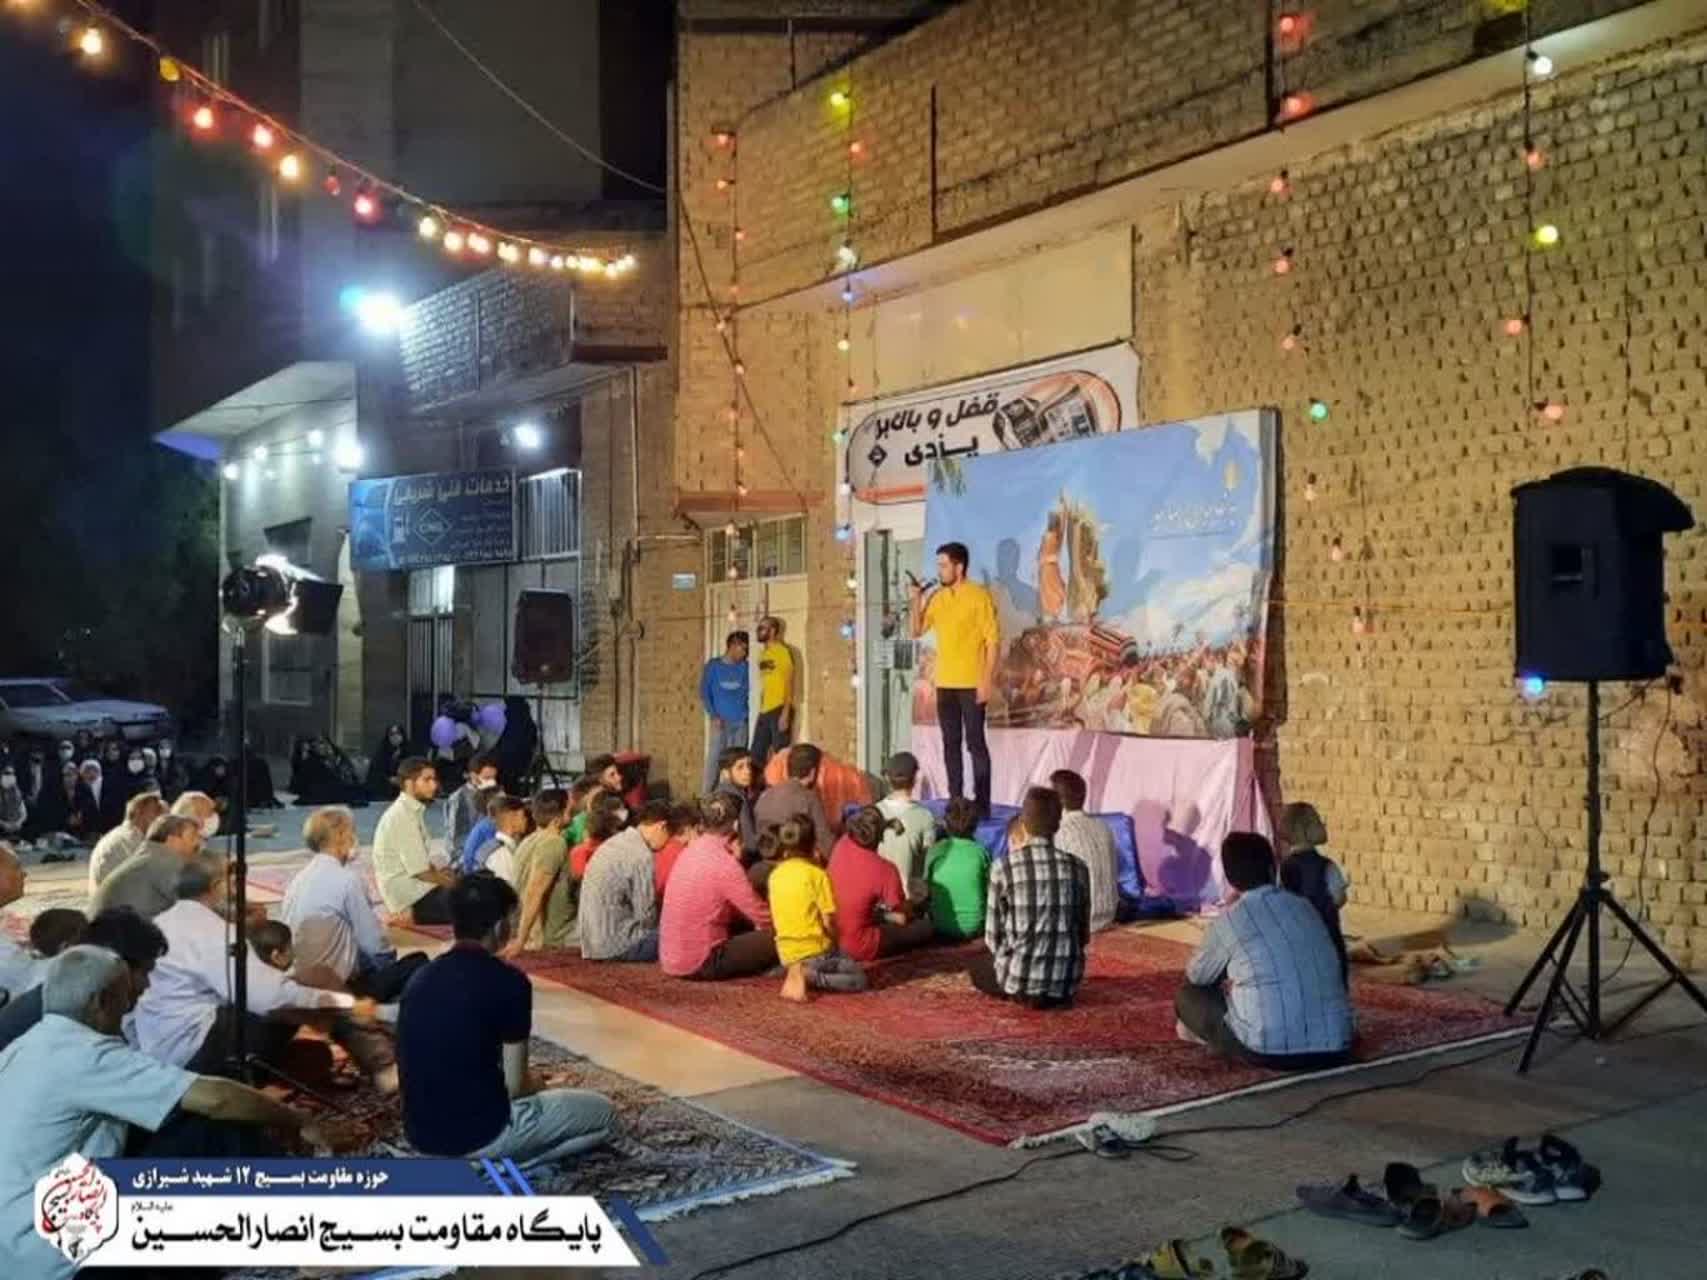 فعالیت بسیجیان پایگاه های حوزه شهید شیرازی در عید غدیر